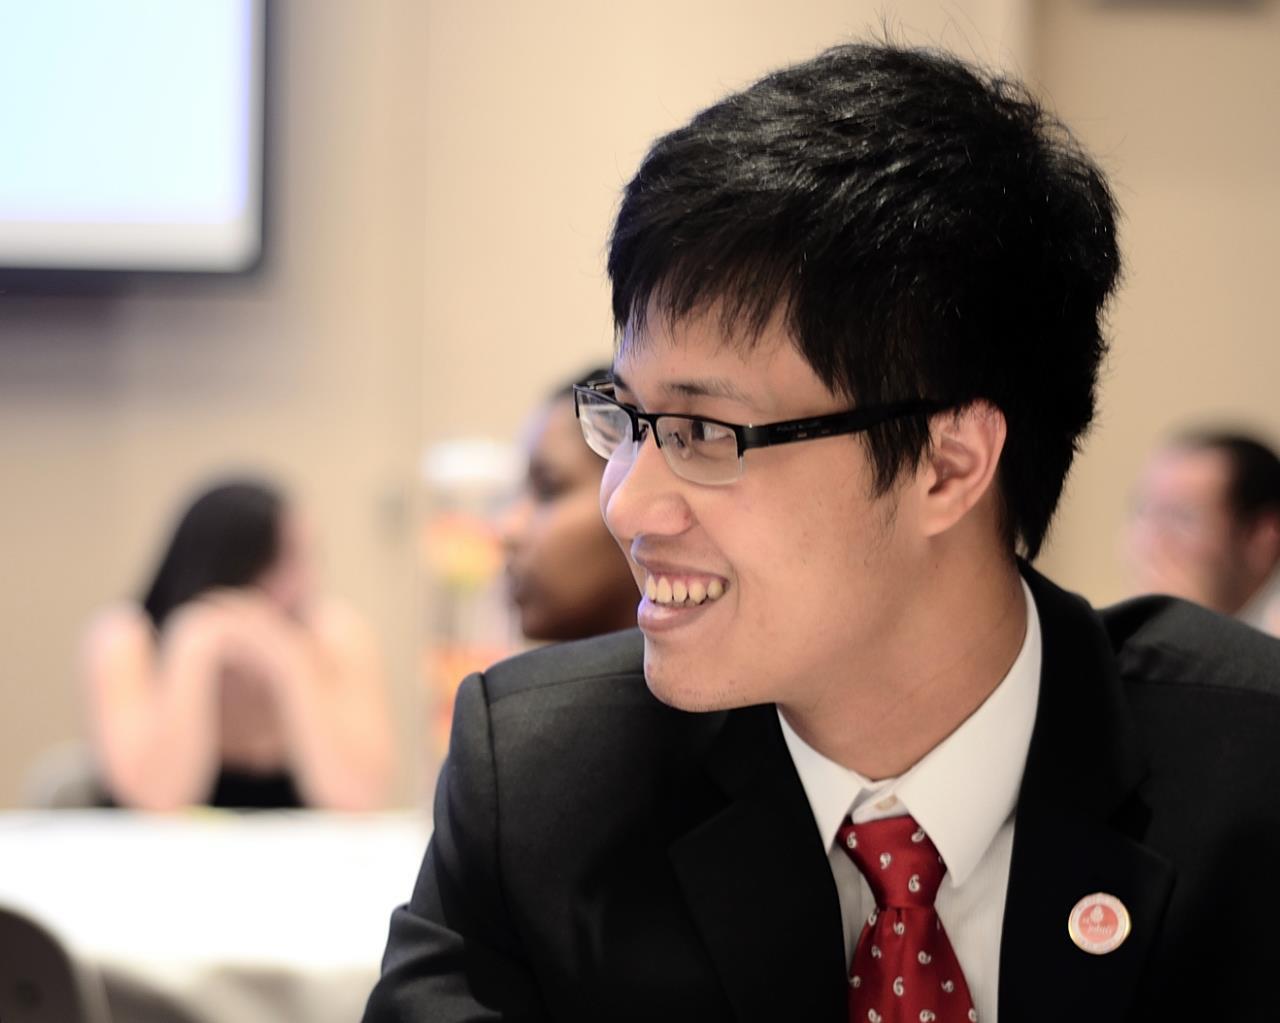 9x Việt “vượt mặt” nhiều ứng viên giành học bổng danh giá của Harvard